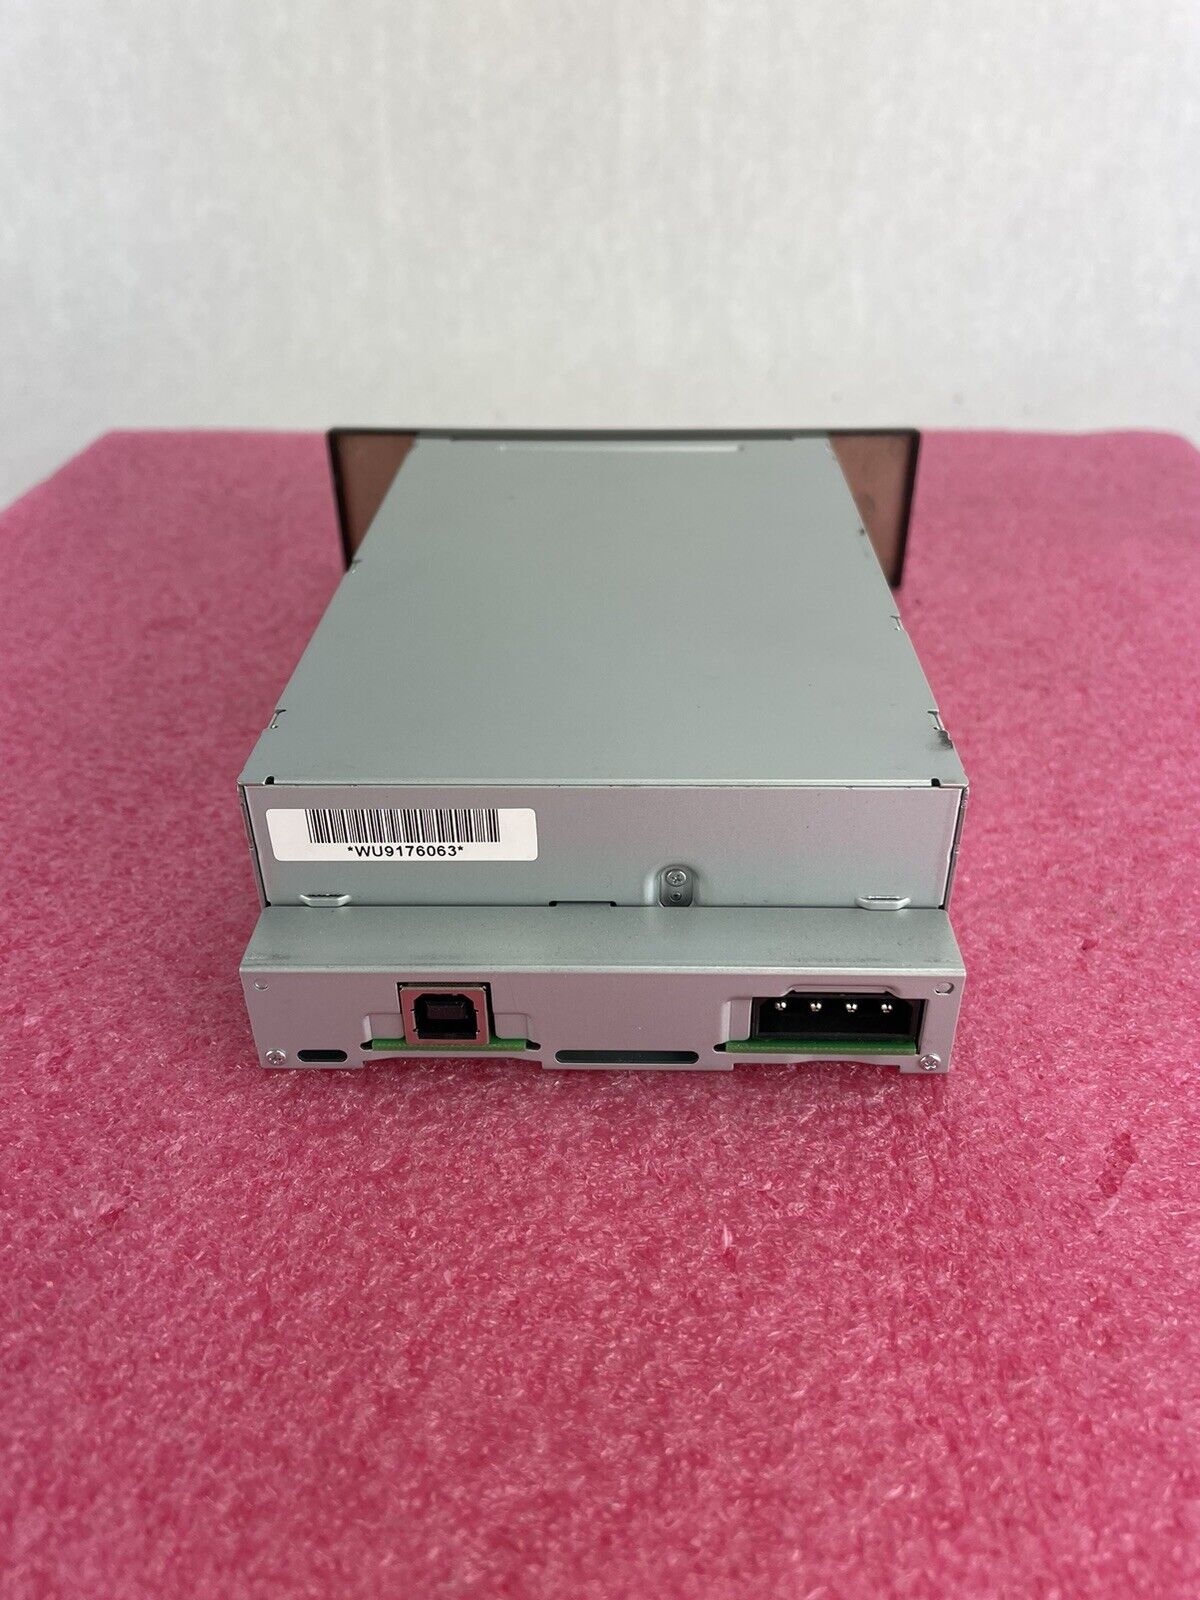 HP DAT 160 BRSLA-05U2 USB Tape Drive